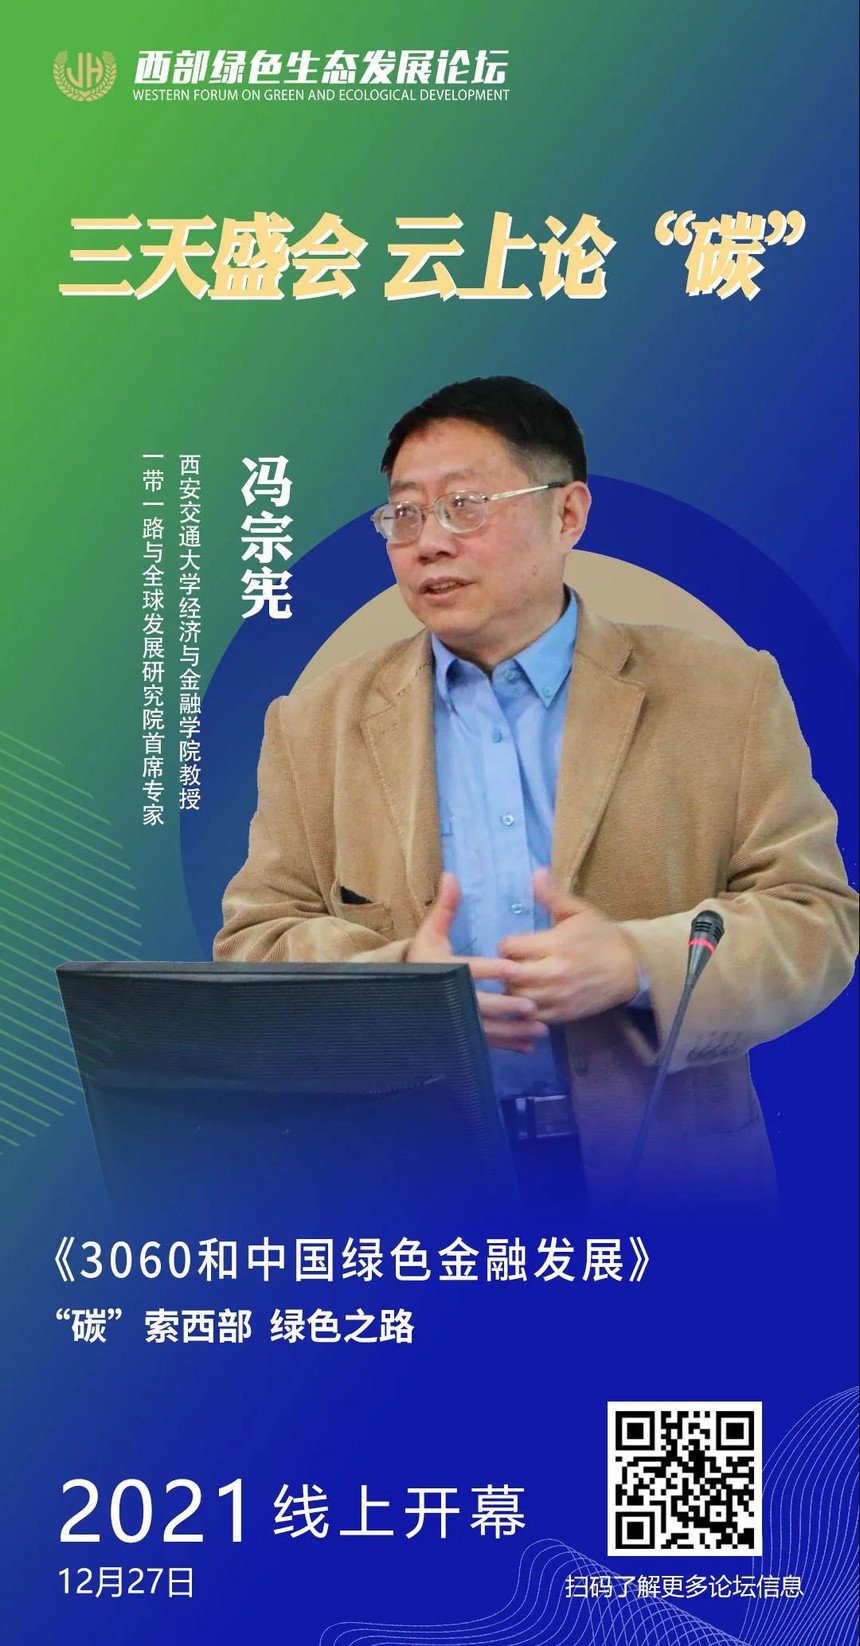 【西部生态·论坛篇】冯宗宪教授为您解读“绿色金融”